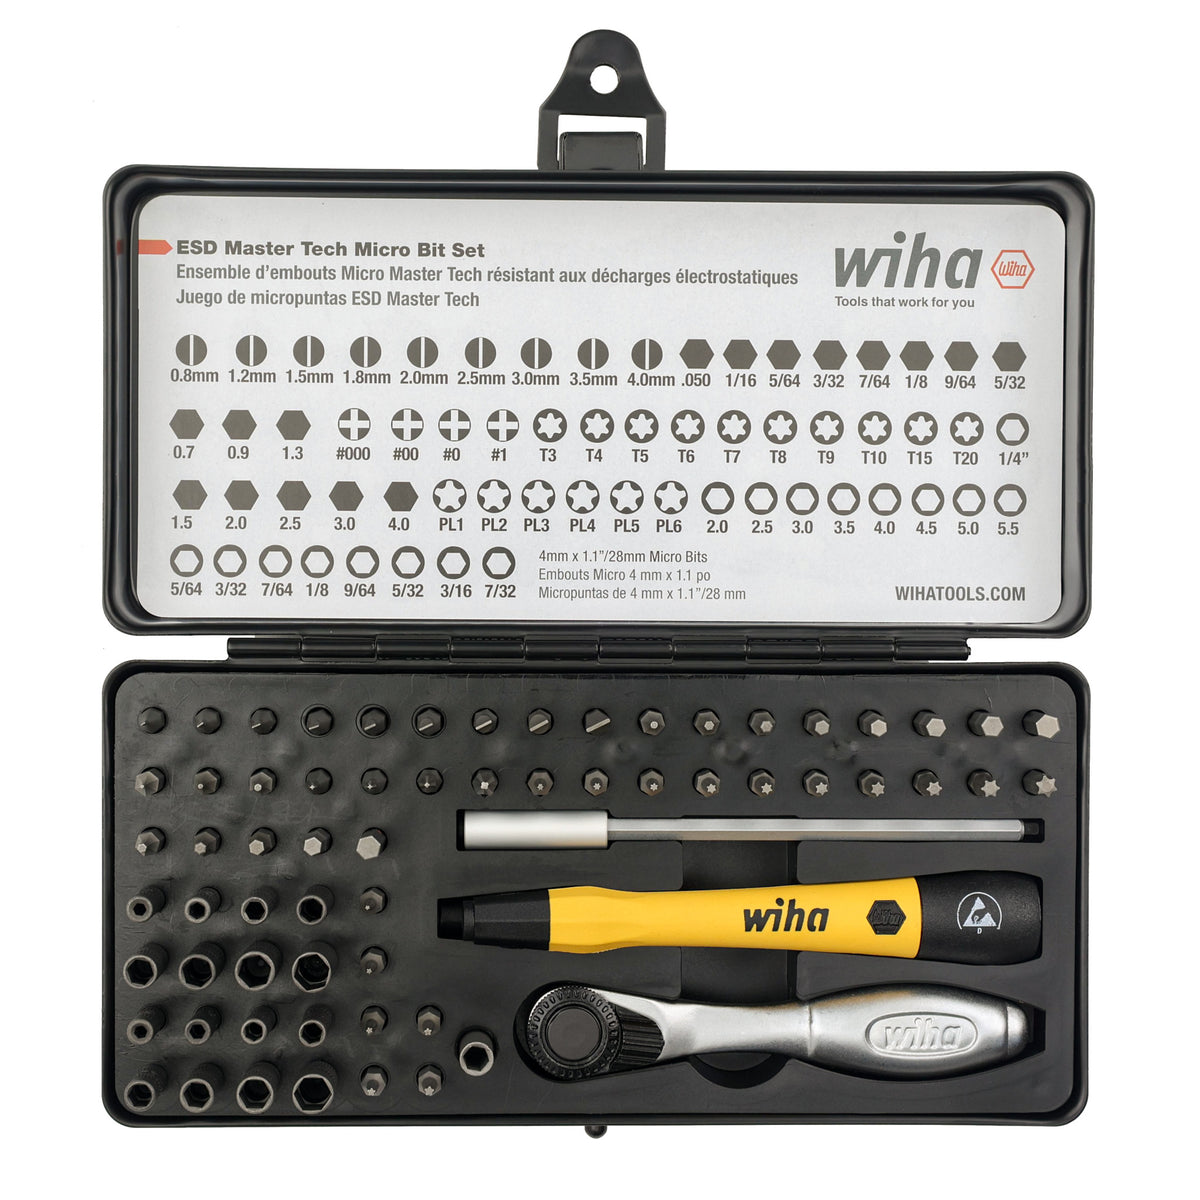 45153 Wiha Tools, Kit de herramientas Wiha Tools, Bolsa de 26 piezas, para  electricistas, aprobado VDE, 243-6320